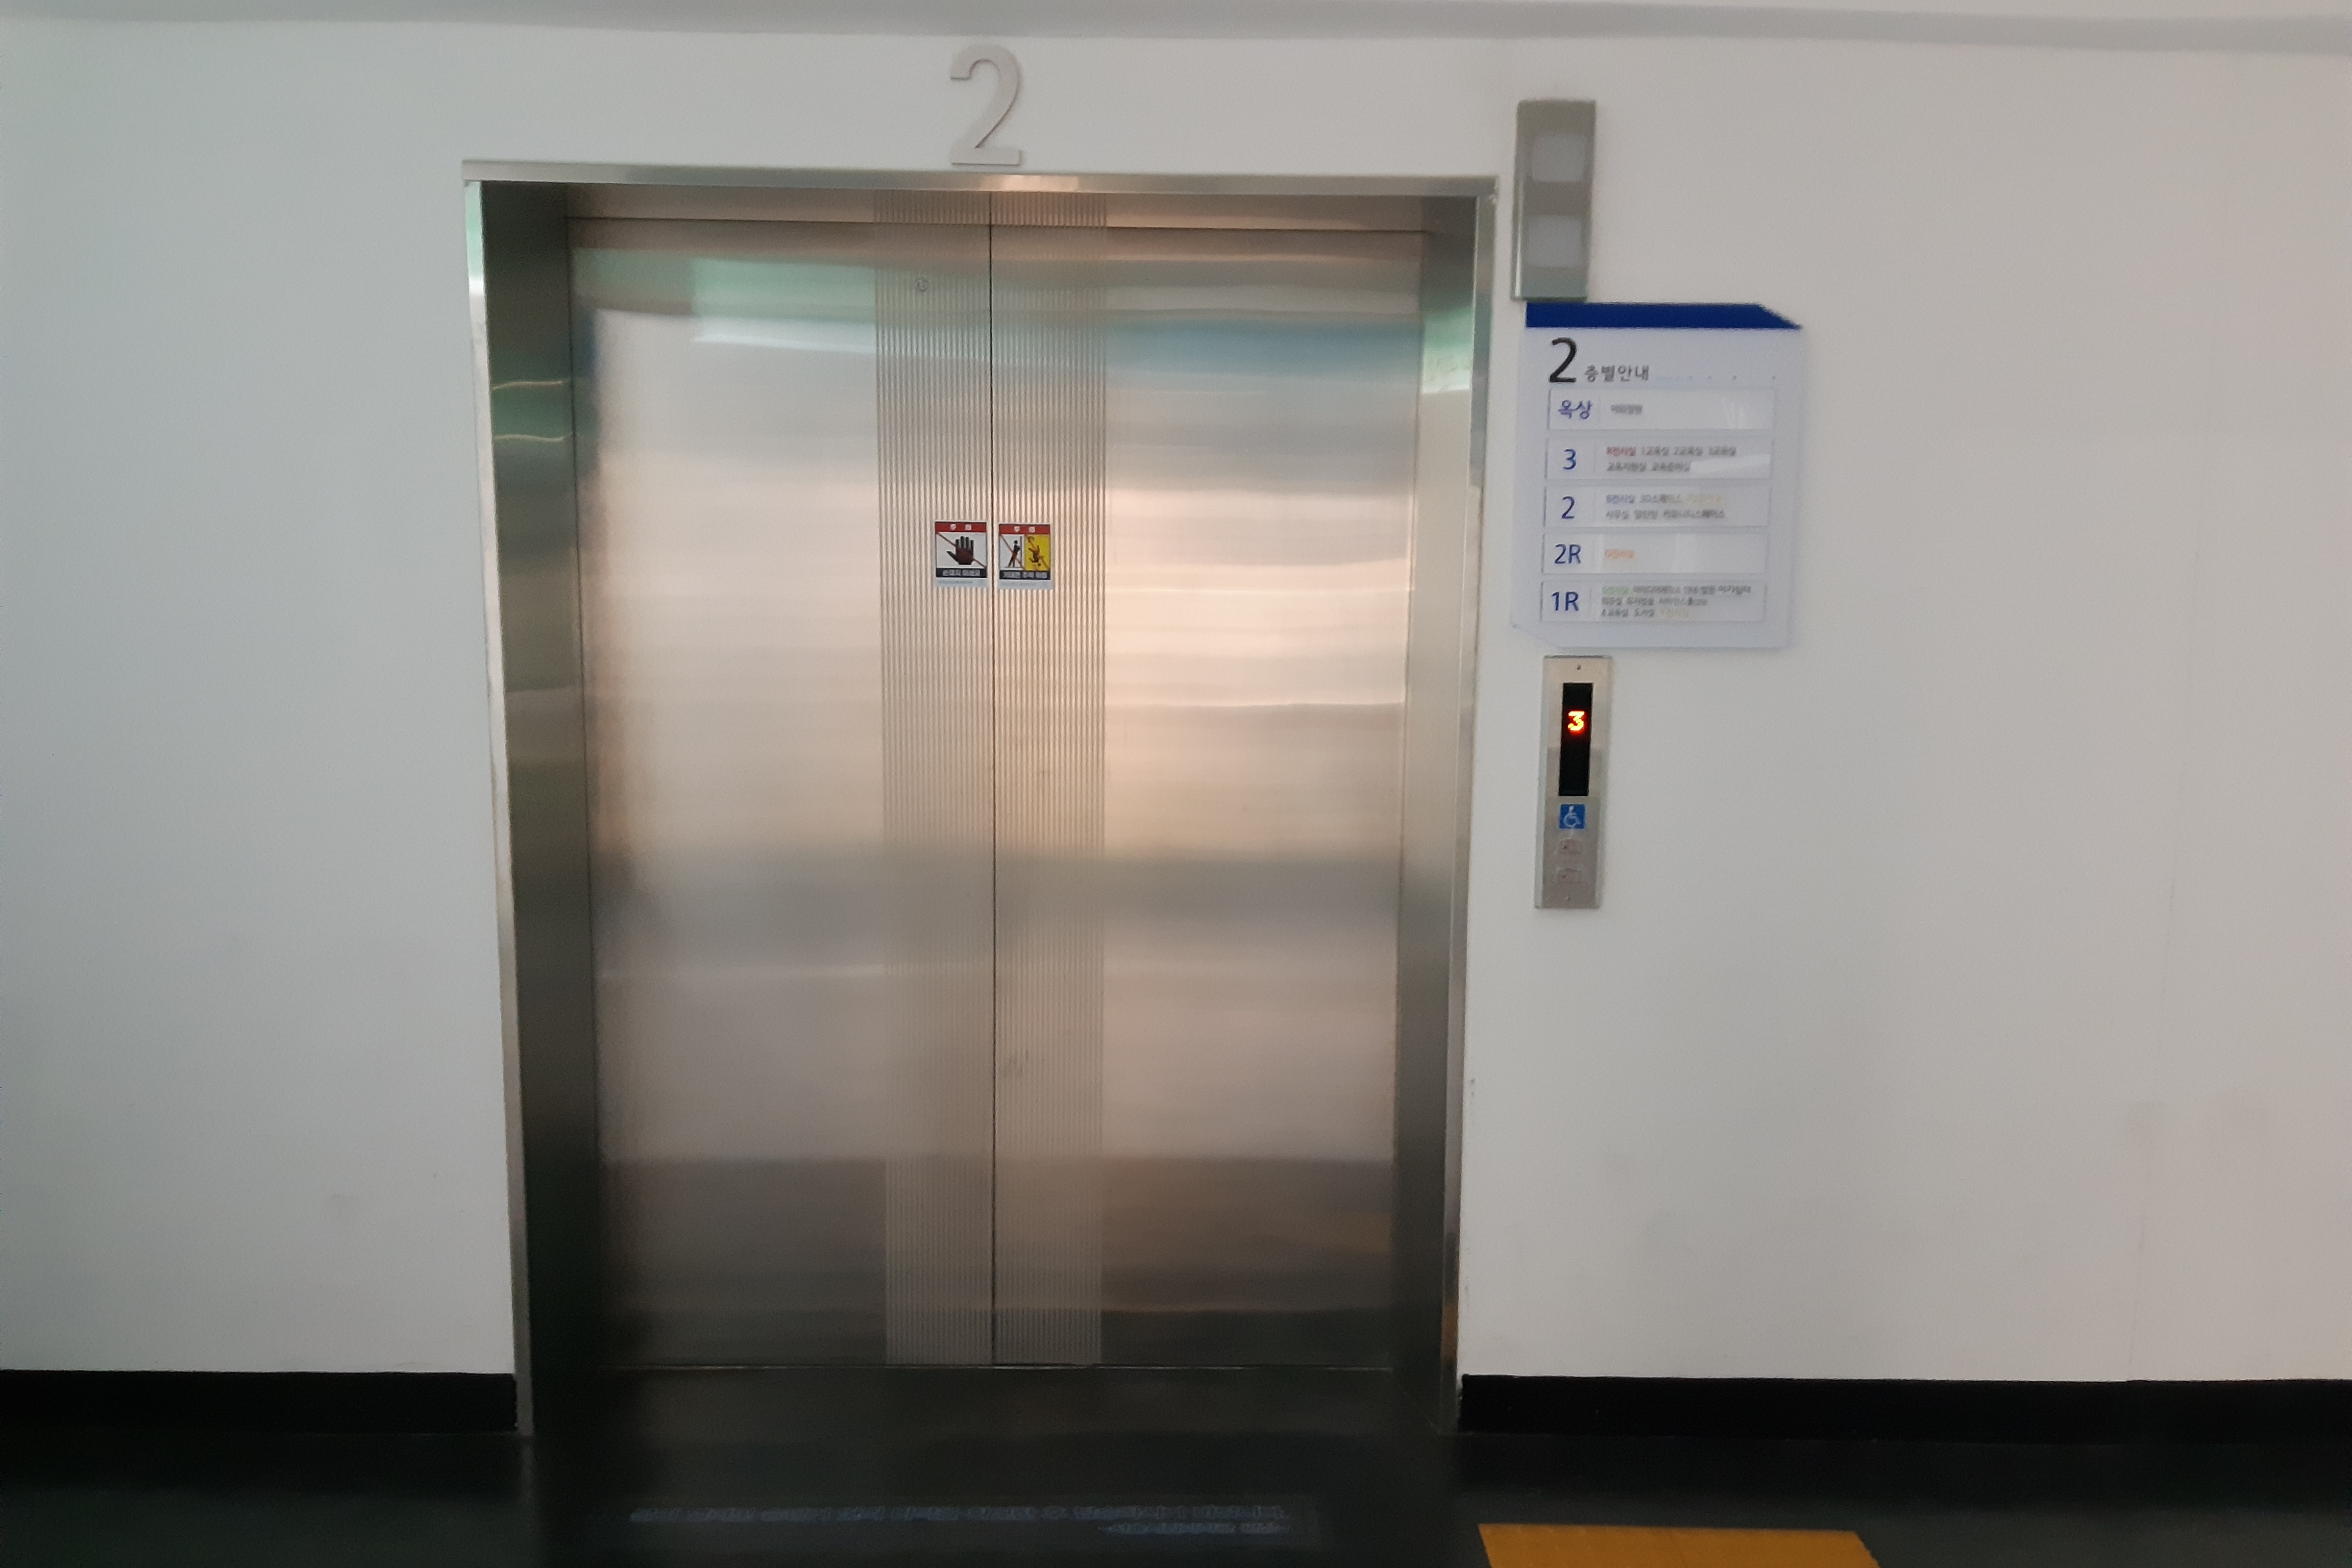 엘리베이터0 : 서울시립과학관 엘리베이터 입구 전경